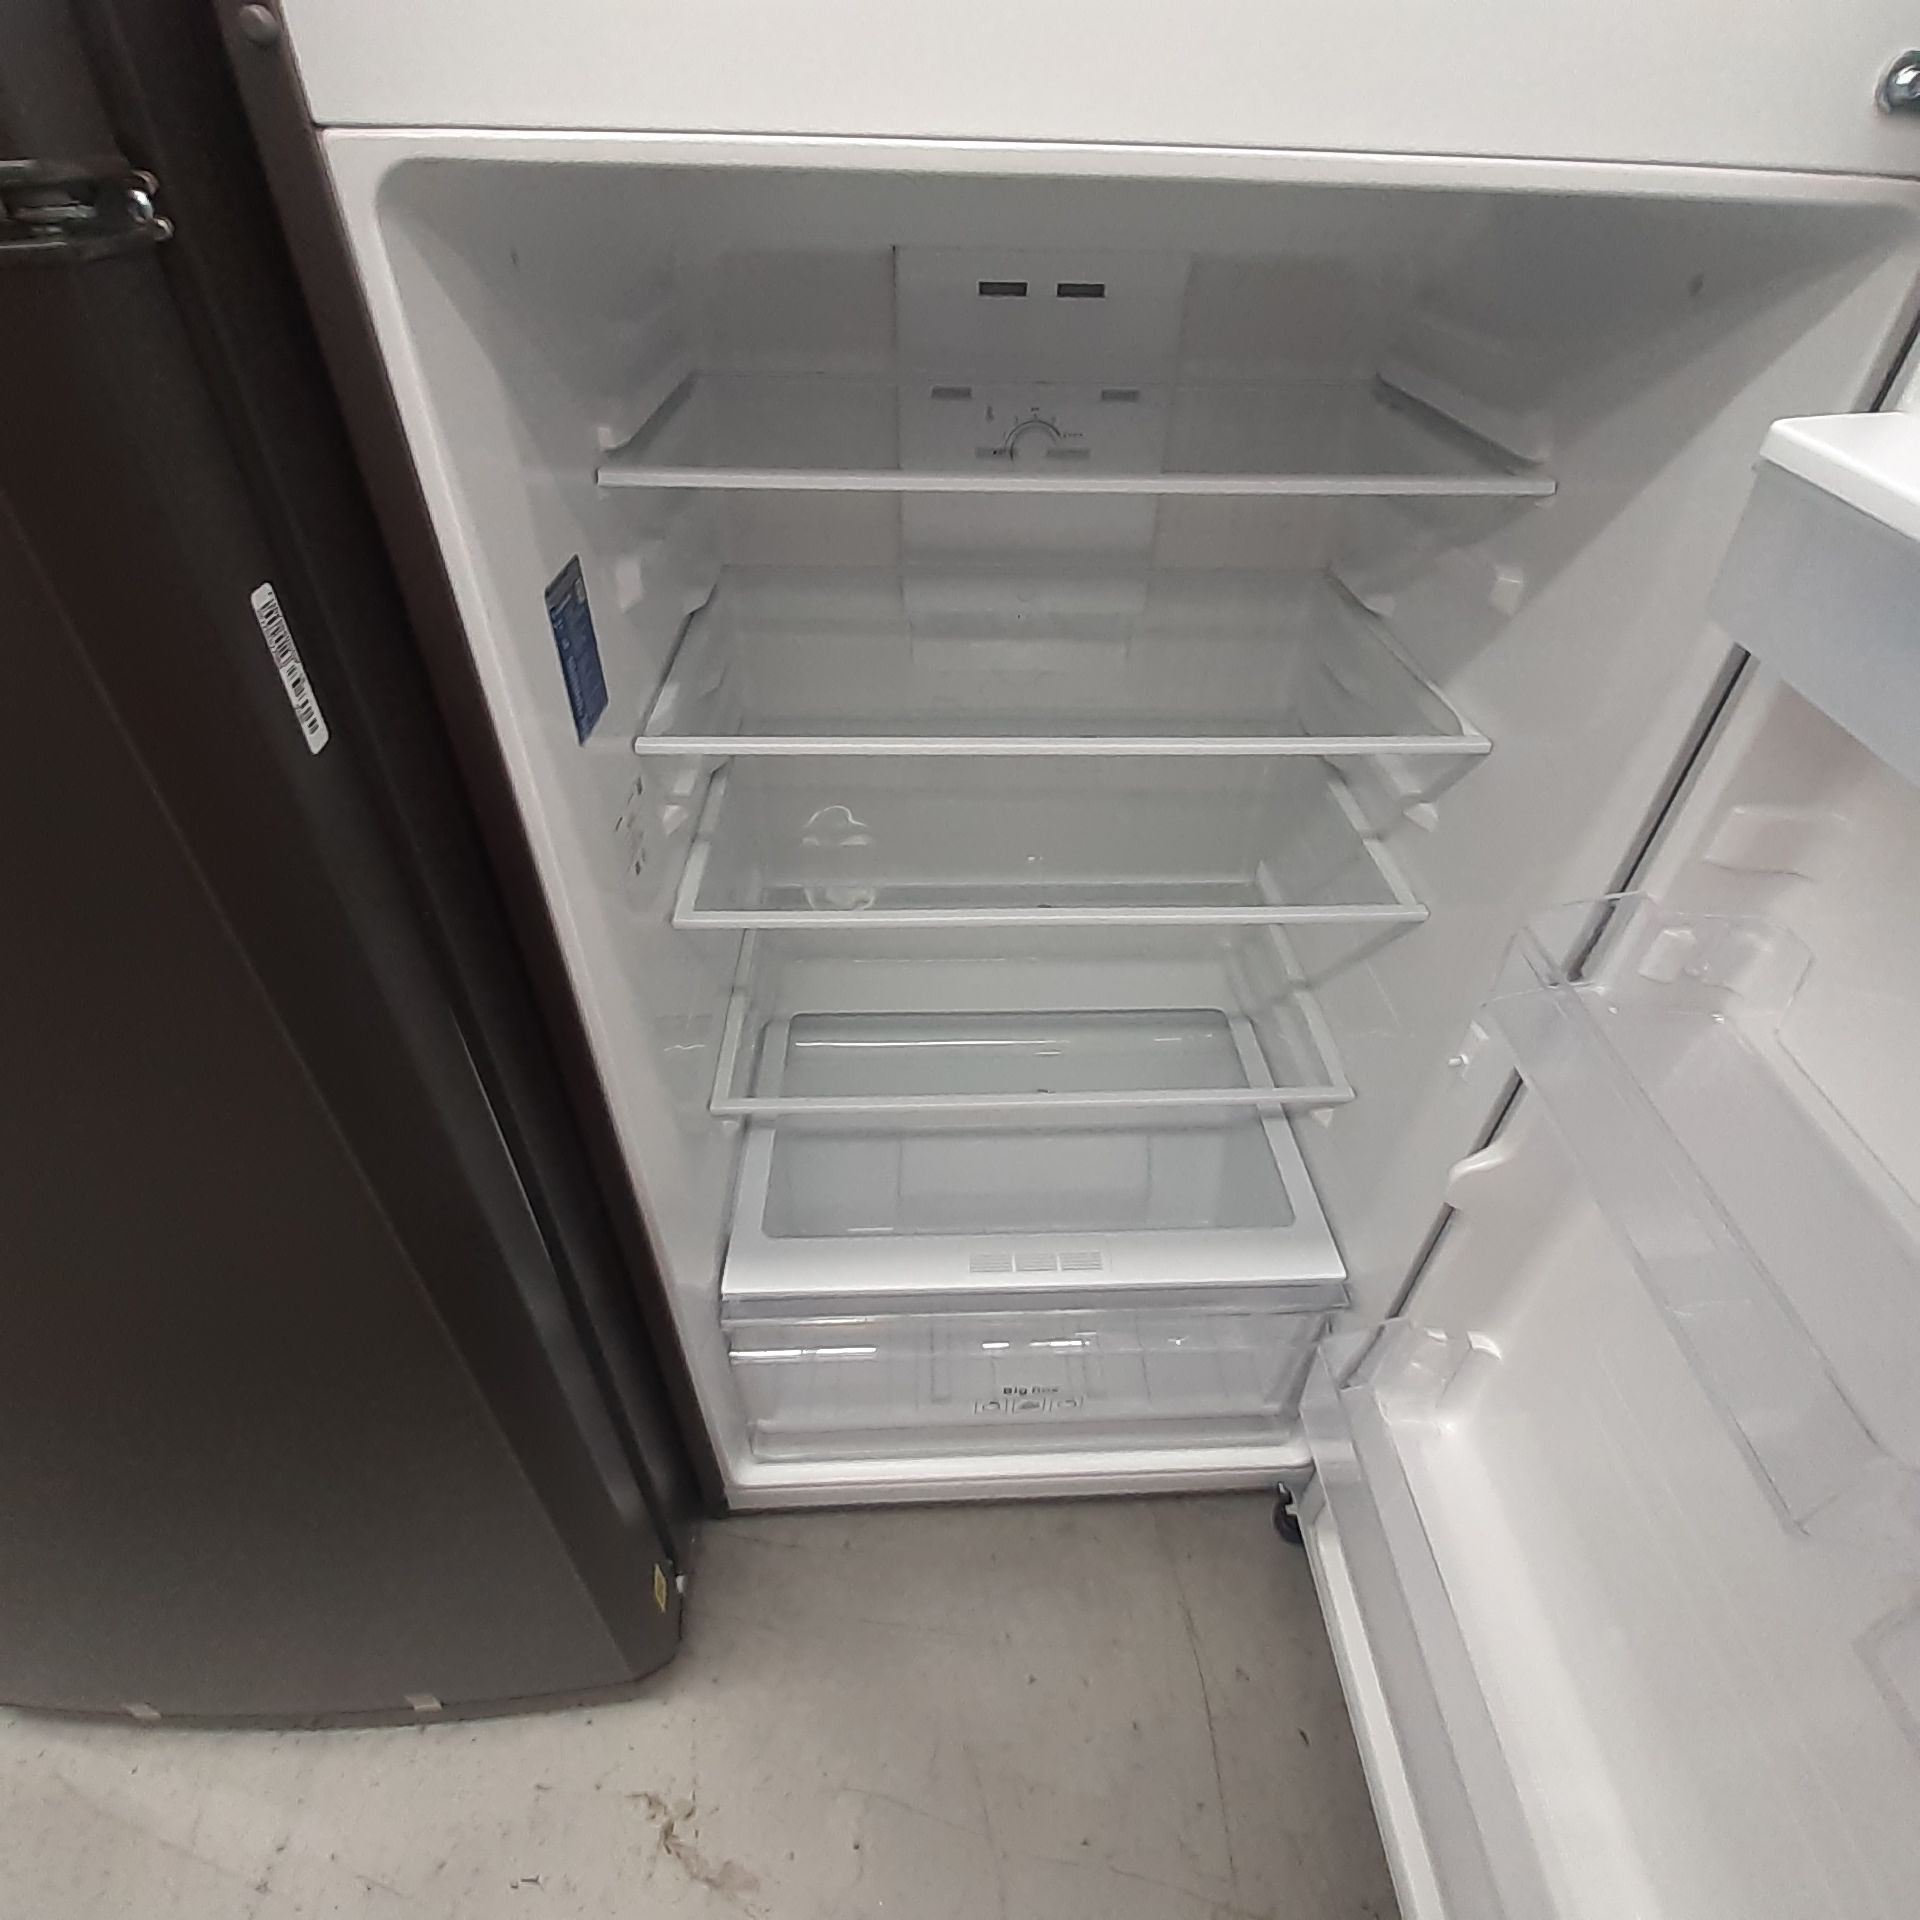 Lote De 2 Refrigeradores: 1 Refrigerador Marca Mabe, 1 Refrigerador Marca Winia, Distintos Modelos - Image 10 of 23